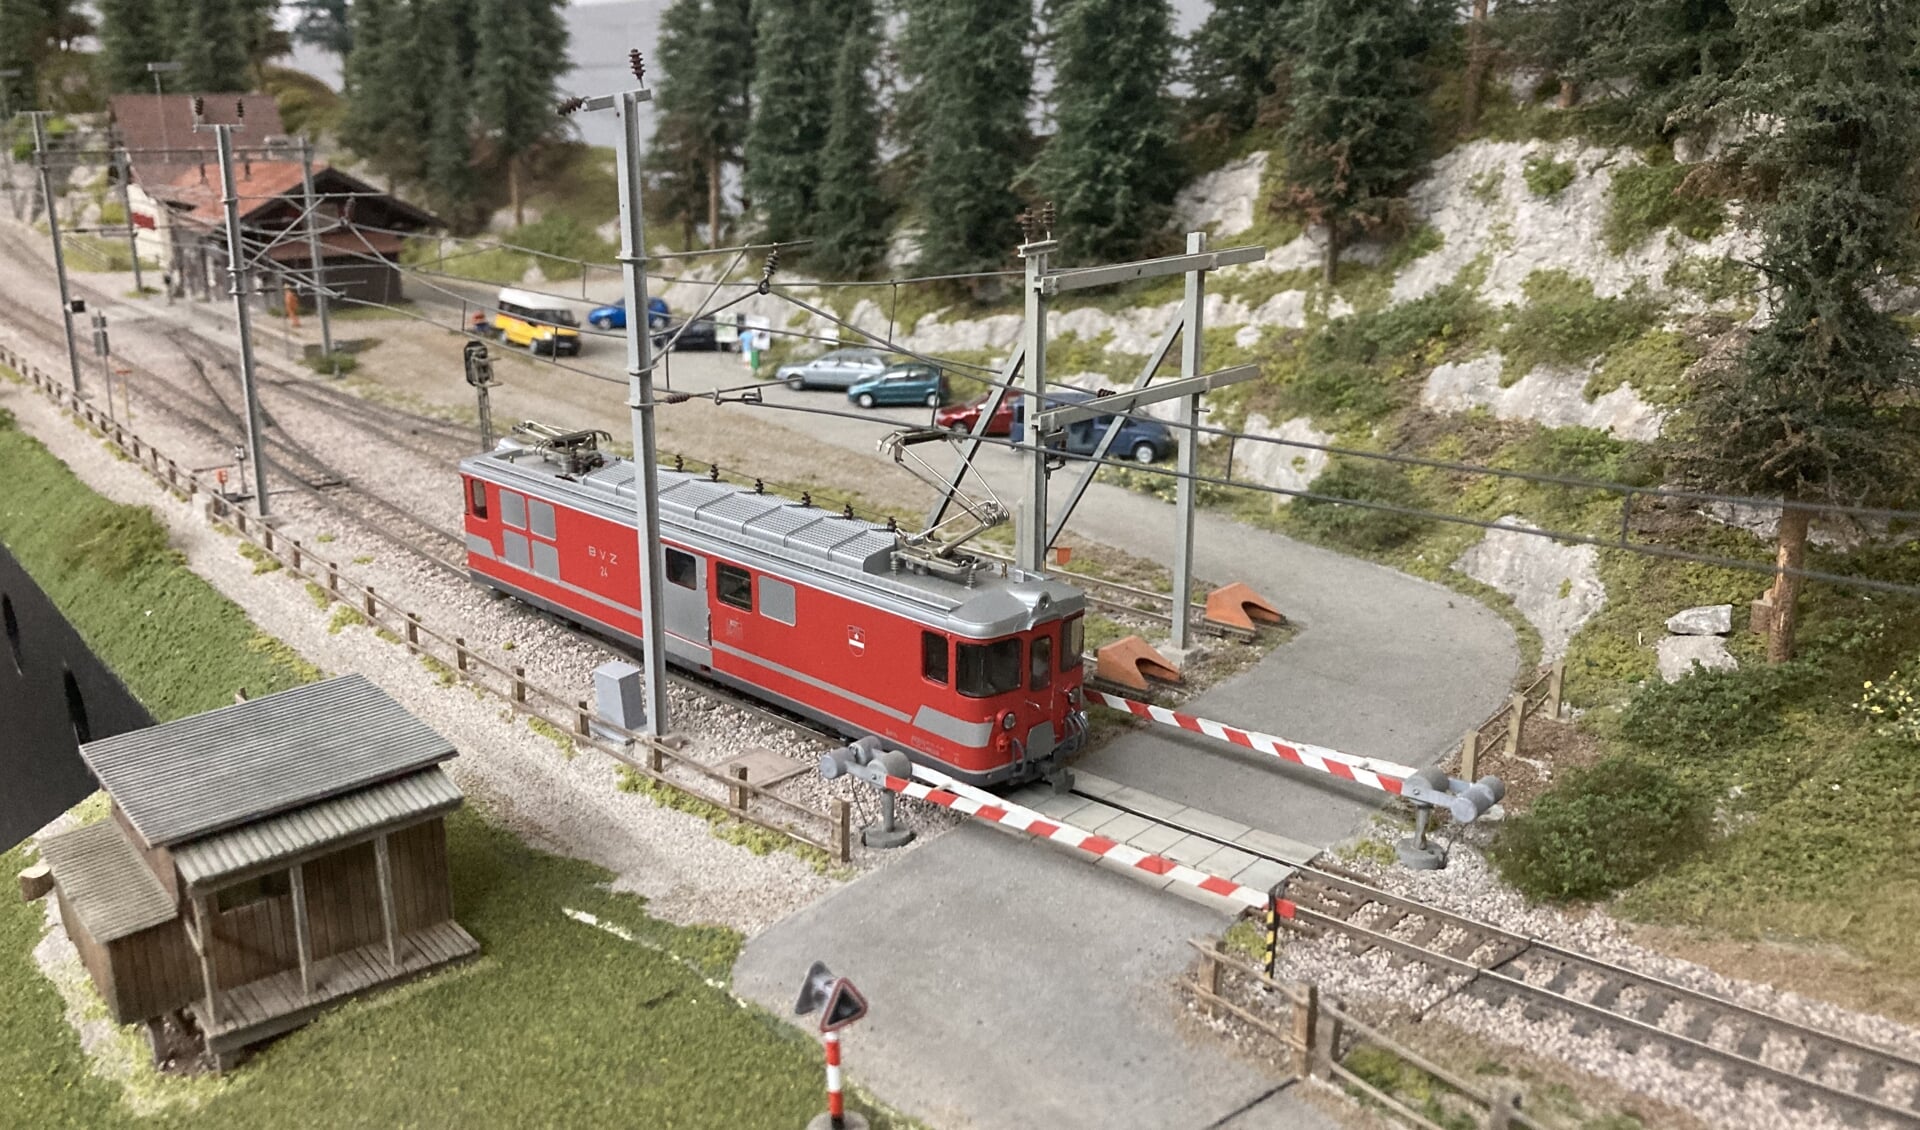 Halt auf Verlangen - baan, Station Wiesen Zwitserland, in  H0m